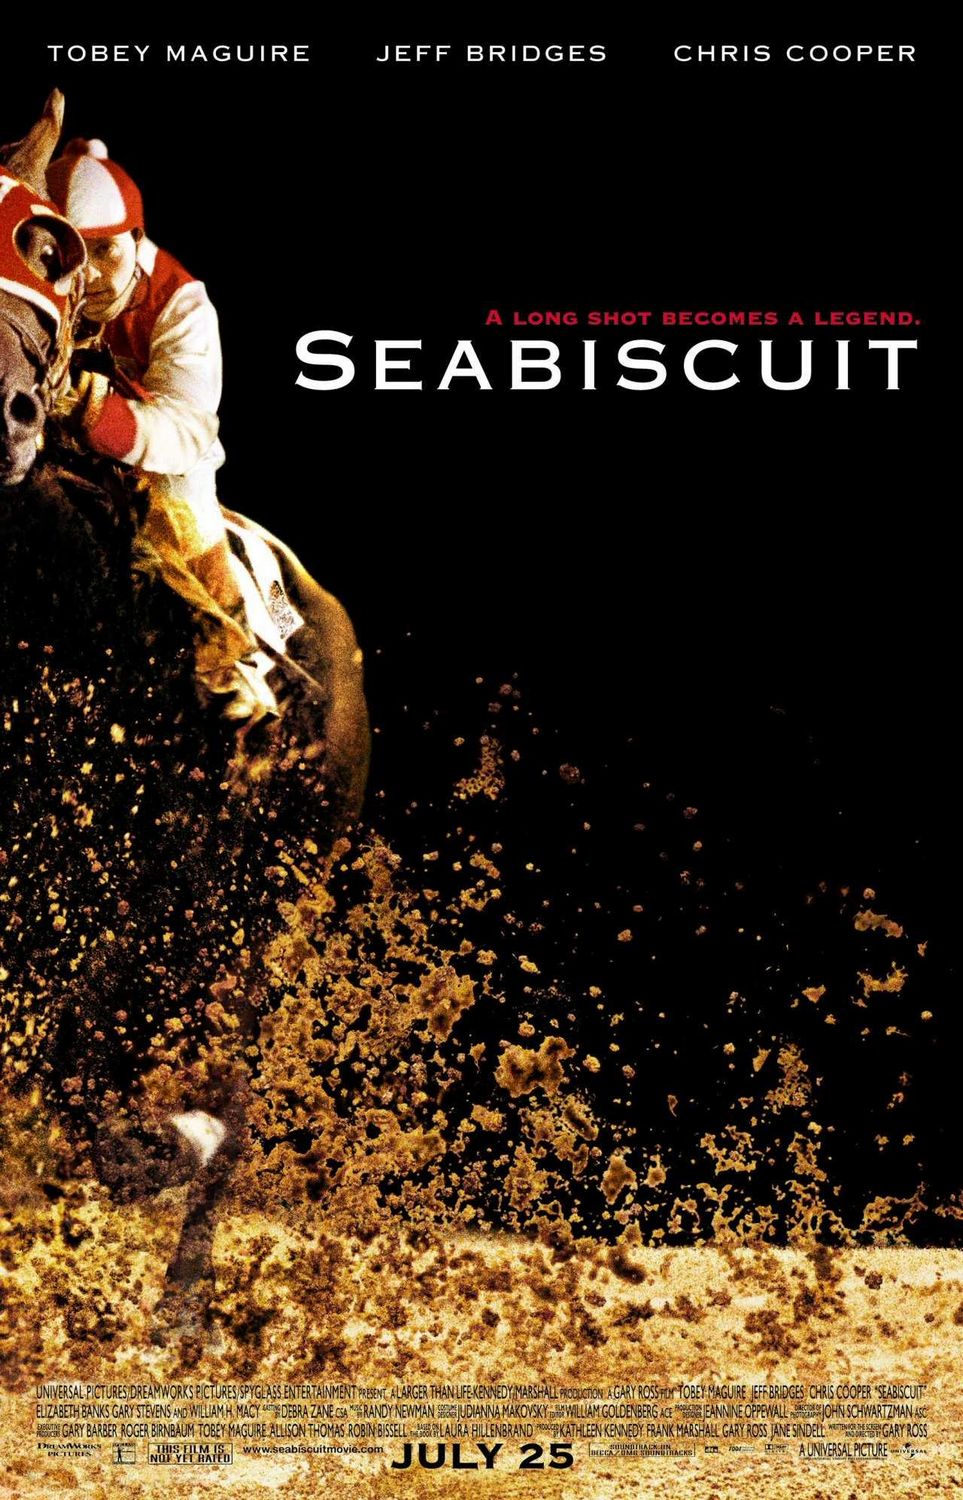 ดูหนังออนไลน์ Seabiscuit 2003 ม้าพิชิตโลก เว็บดูหนังใหม่ออนไลน์